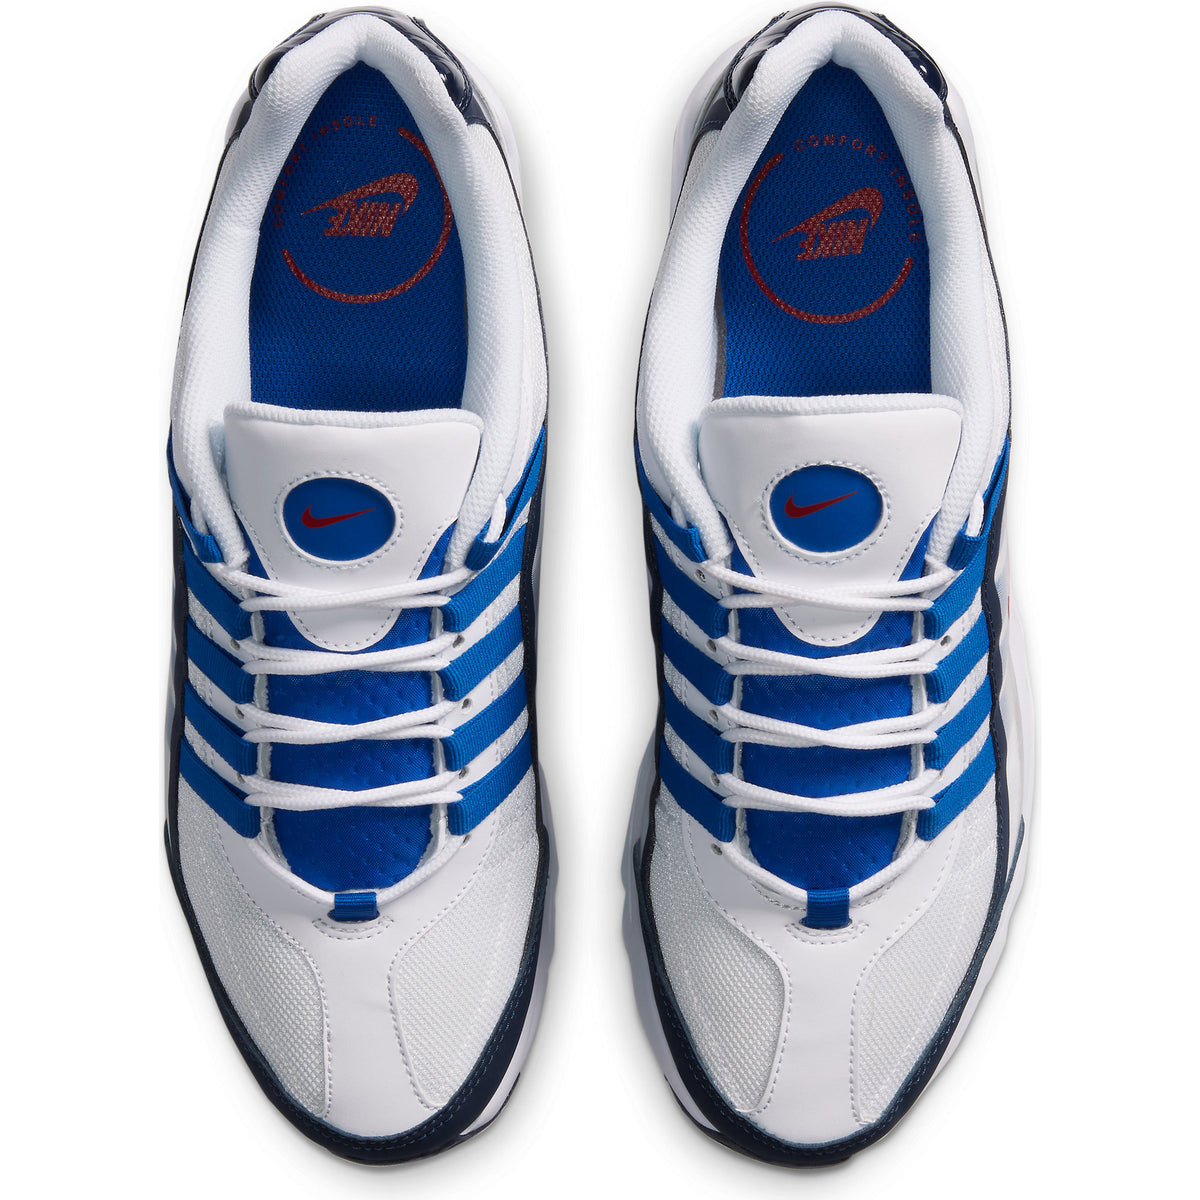 Zapatillas Nike Air Max VG-R de Hombre color  Blanco / Azul